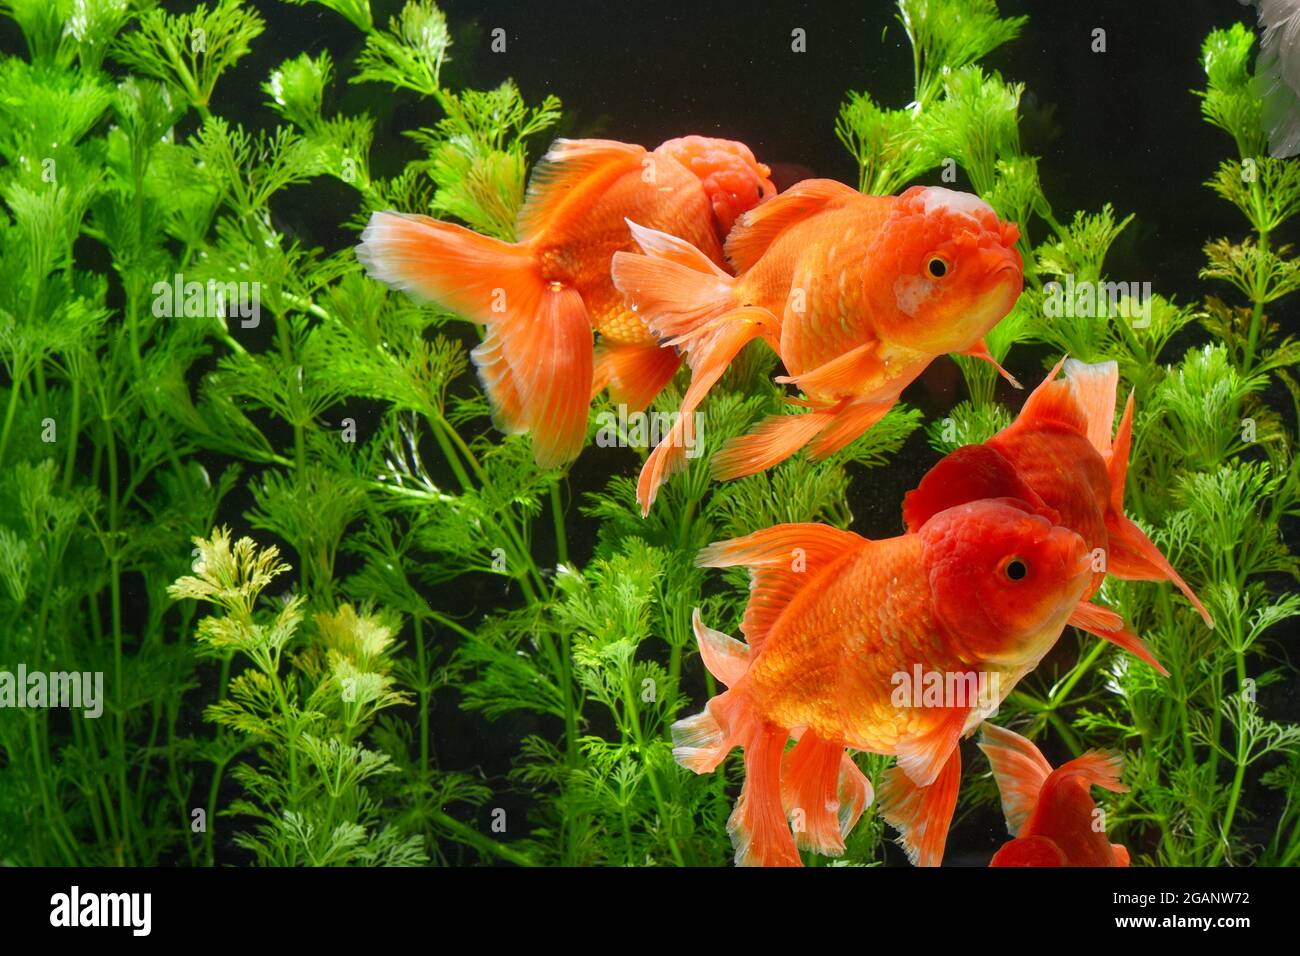 Peces de colores en el acuario con plantas verdes Foto de stock